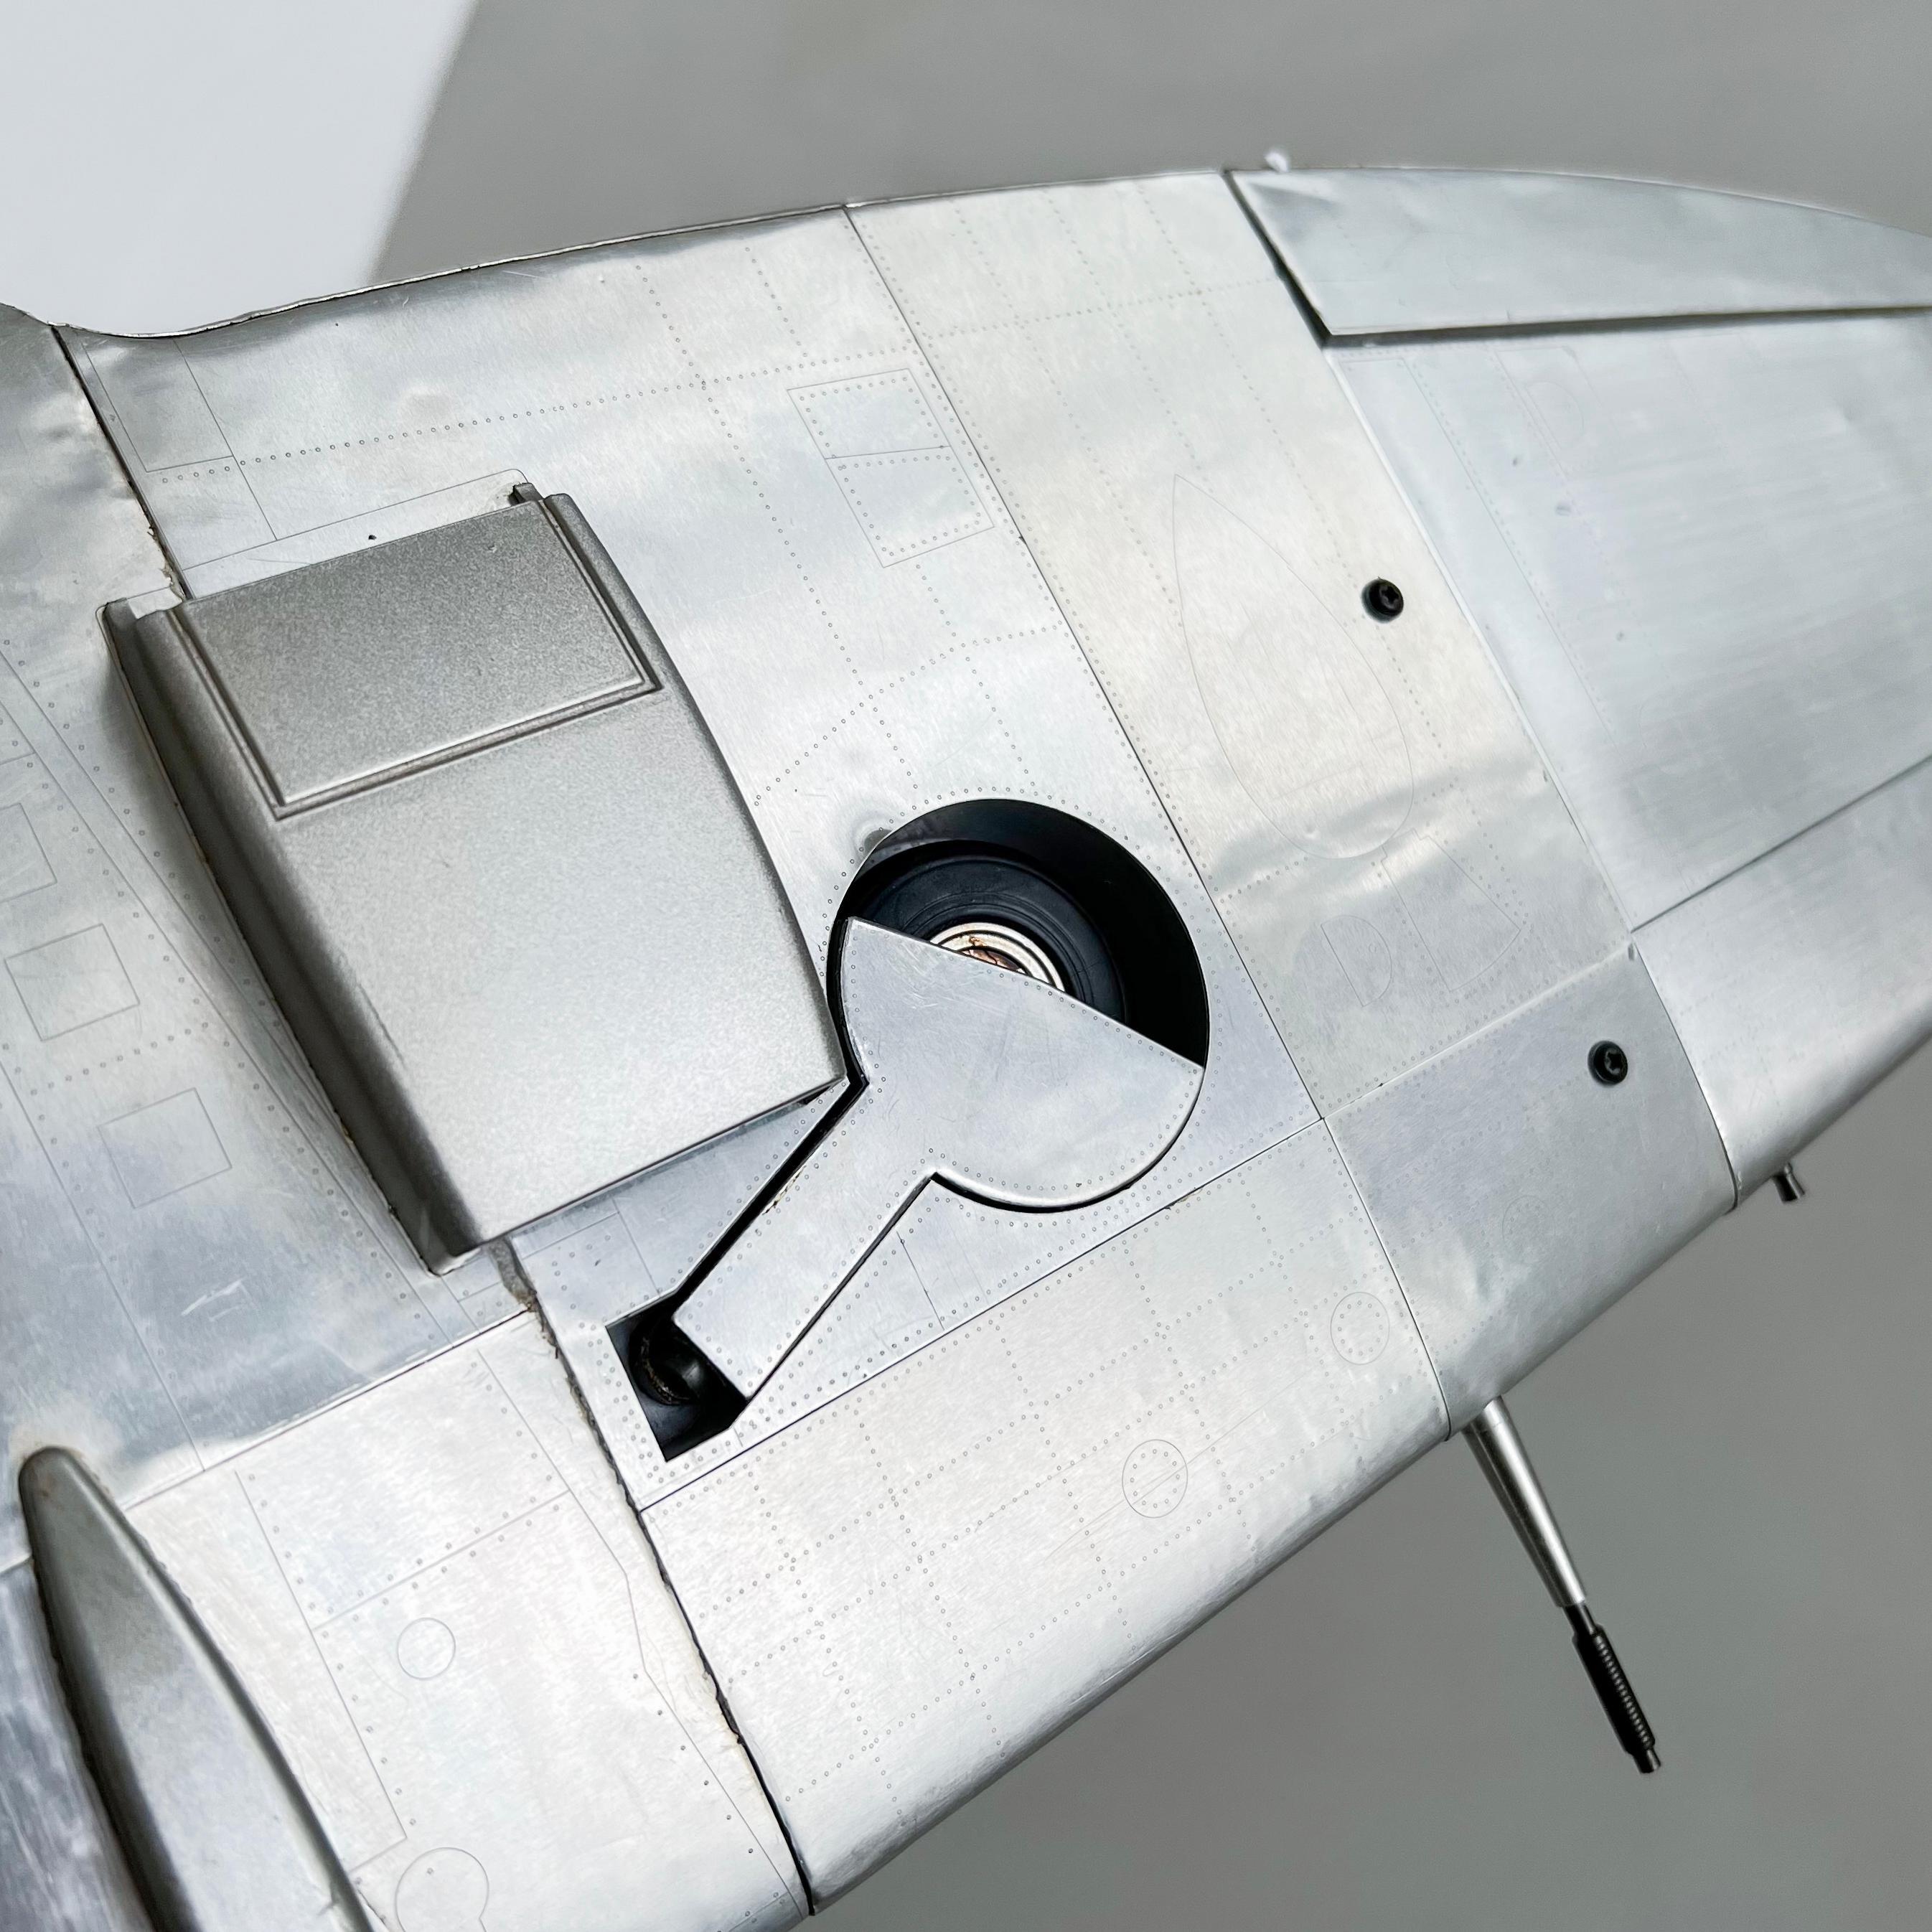 Dekoratives Supermarin-Spitzenfeuer-Flugzeug-Modell in großem Maßstab, großformatig, sehr detailliert im Angebot 1